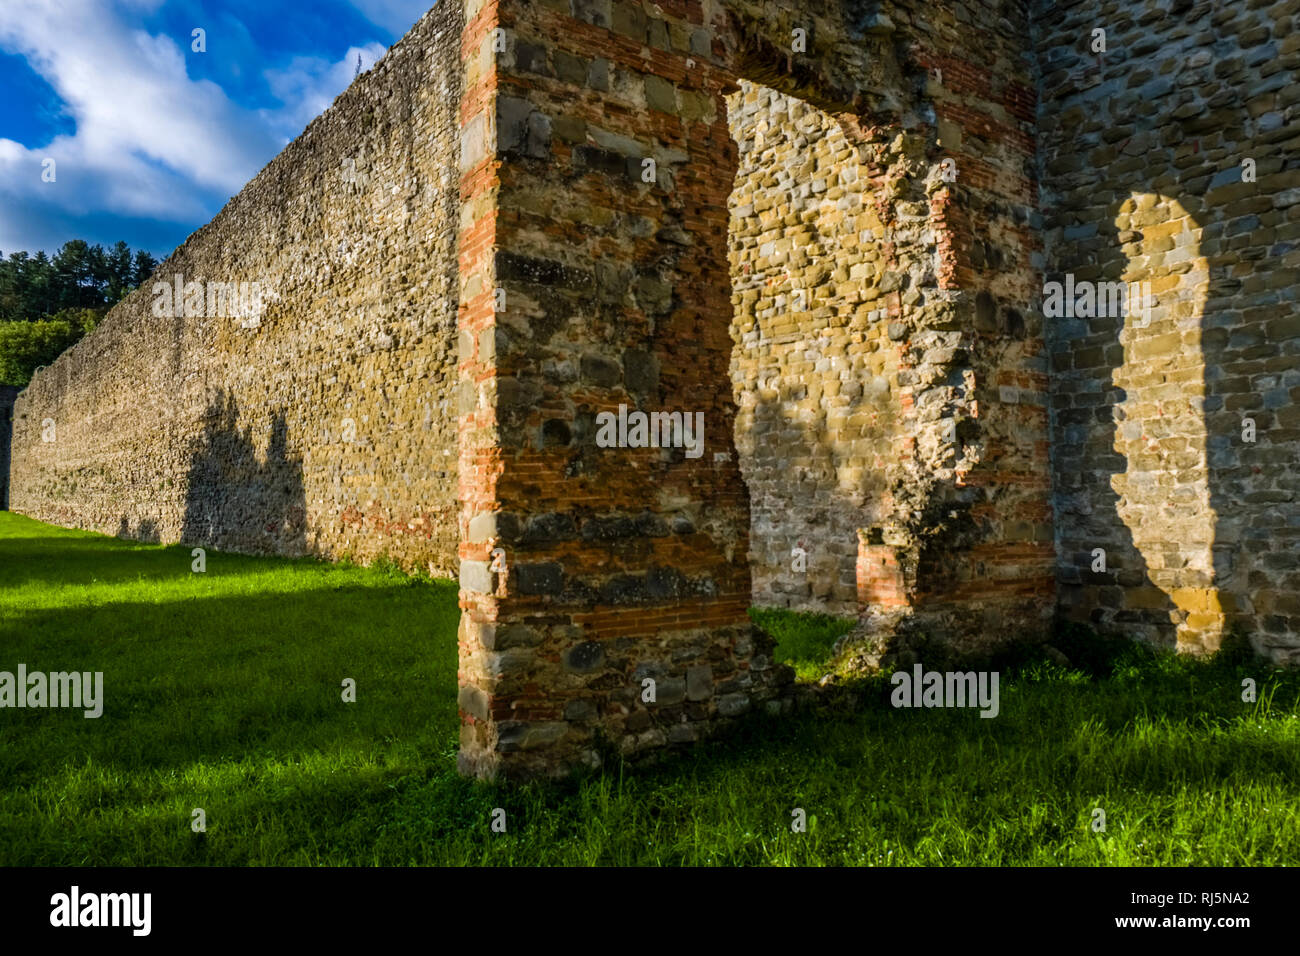 Die mittelalterliche Stadt auf einem Hügel gelegen, mit einer Stadtmauer umgeben Stockfoto